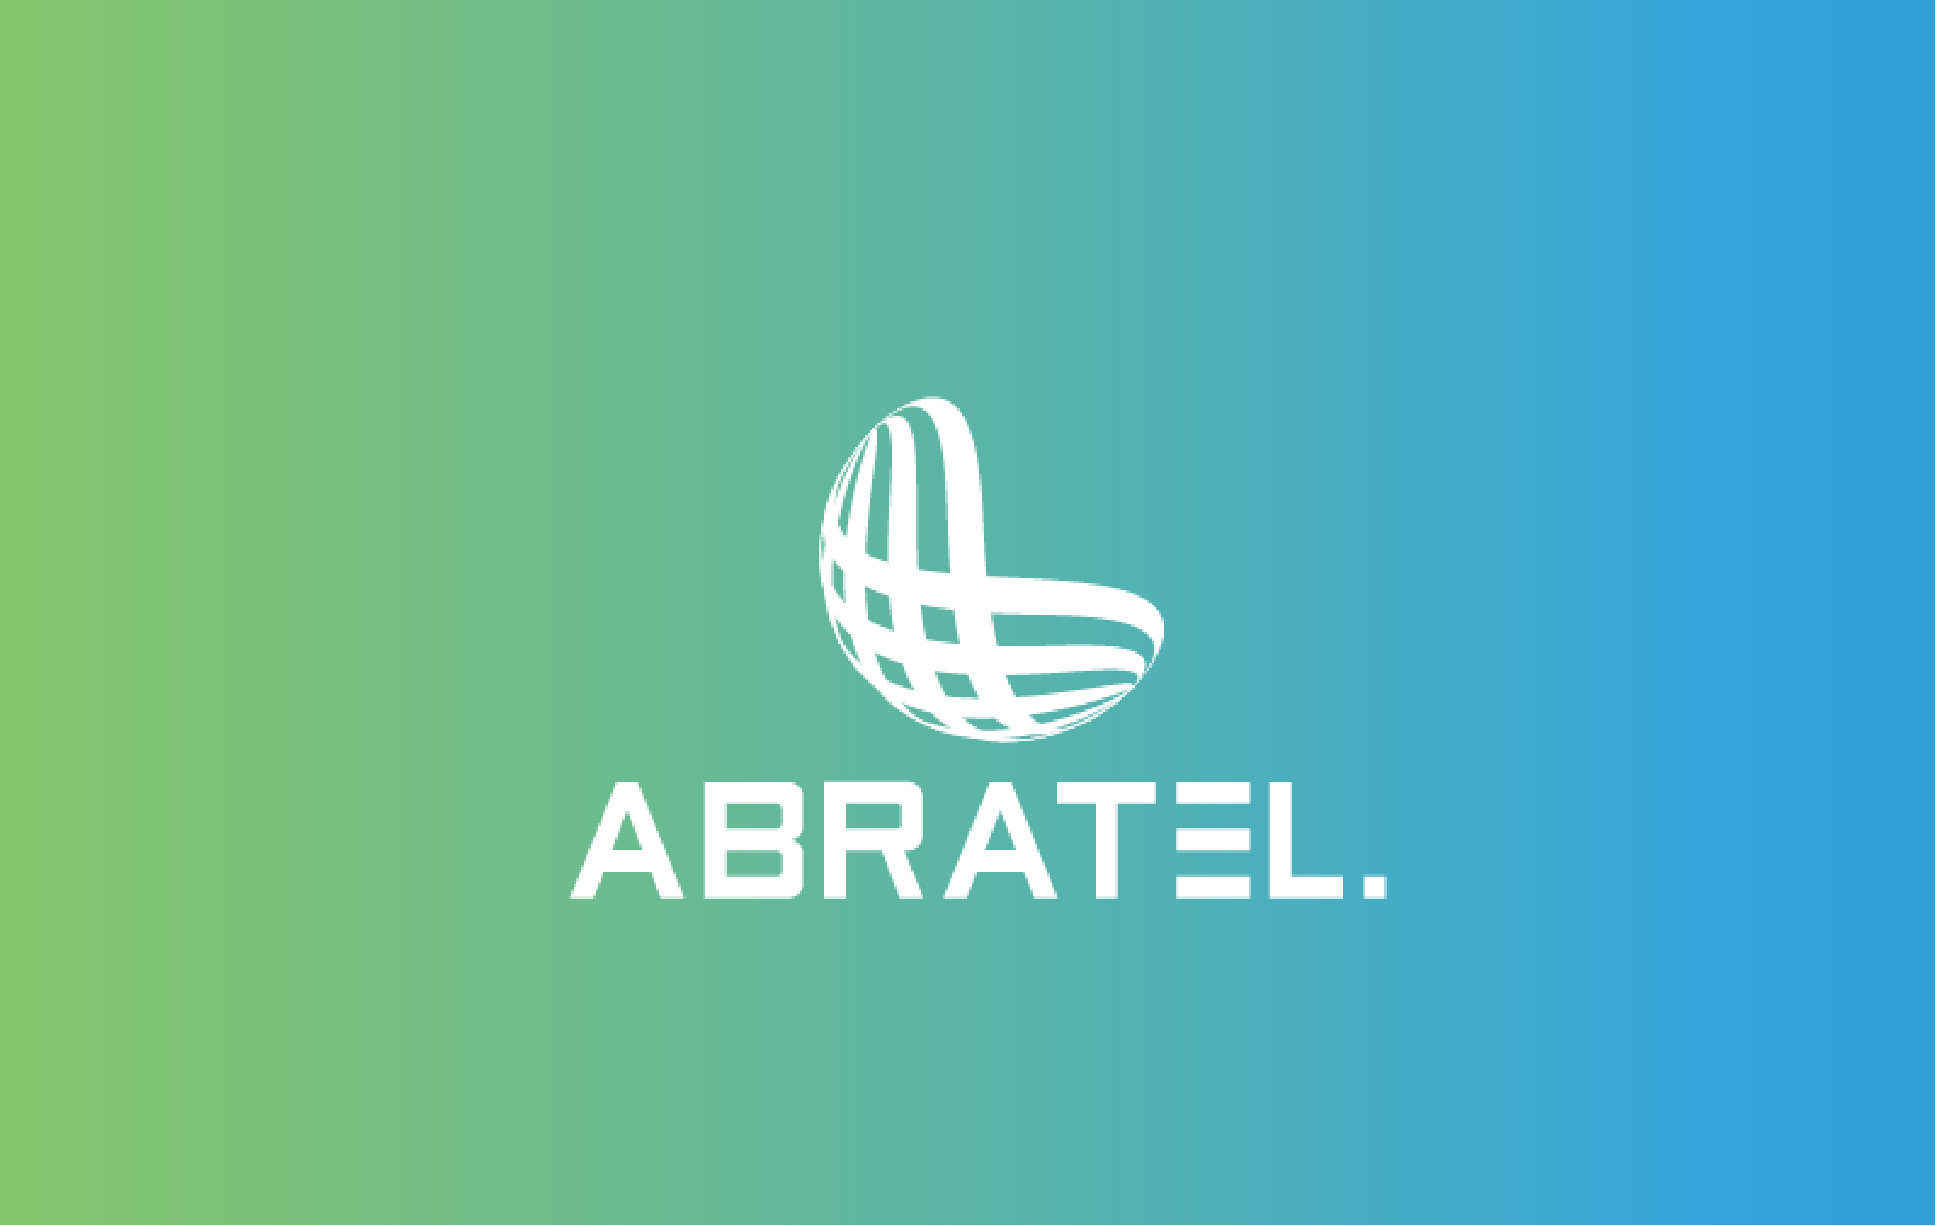 Abratel_Oficio-2-5